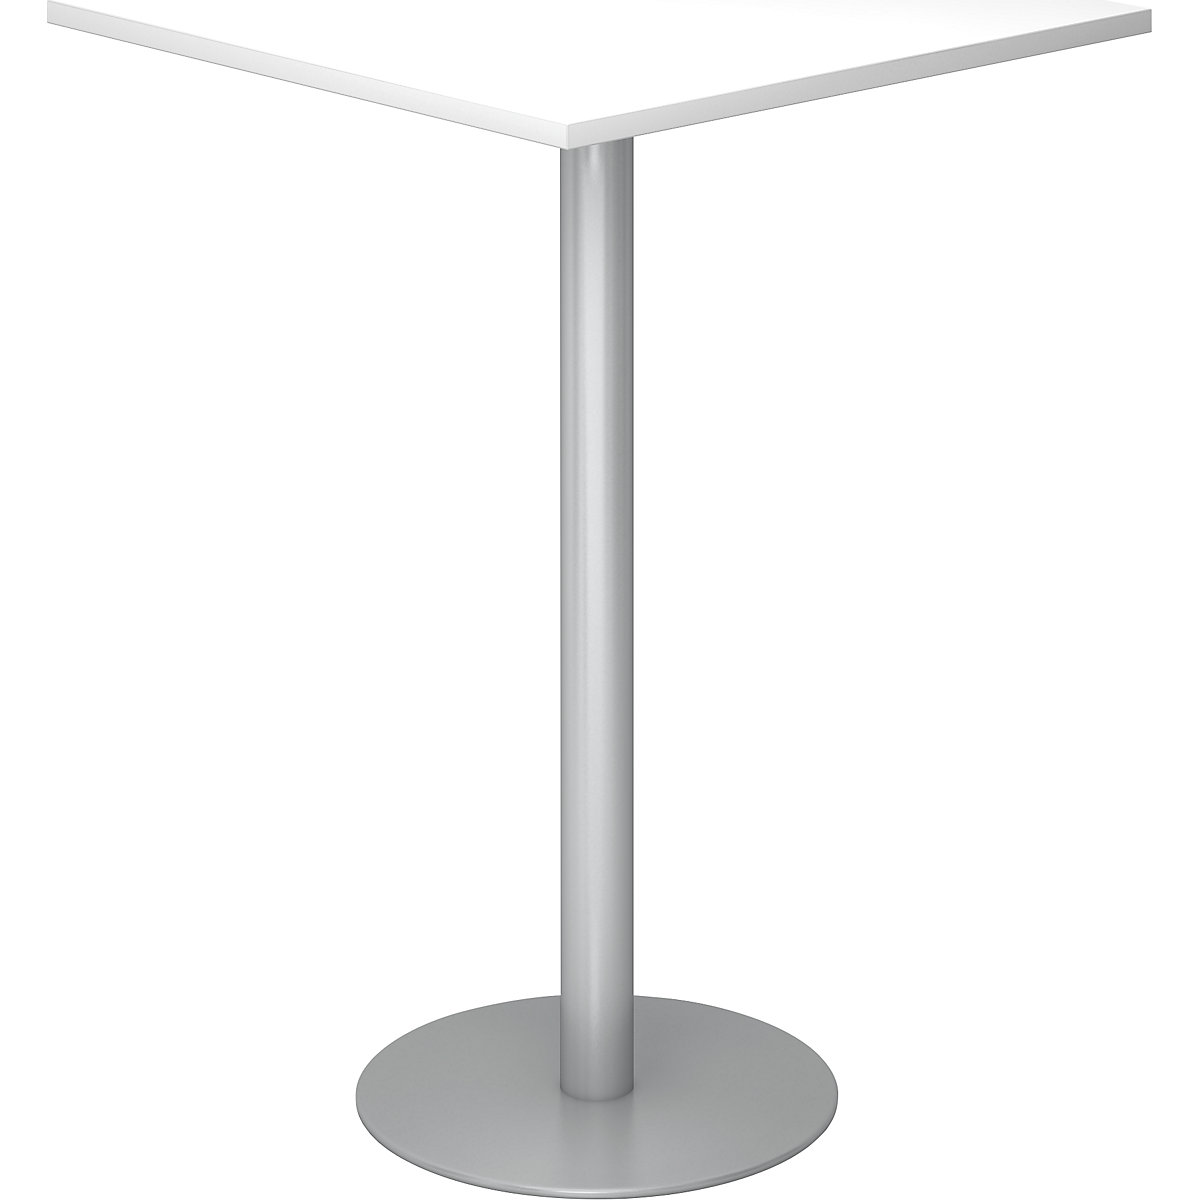 Állóasztal, h x szé 800 x 800 mm, 1116 mm magas, ezüst váz, fehér asztallap